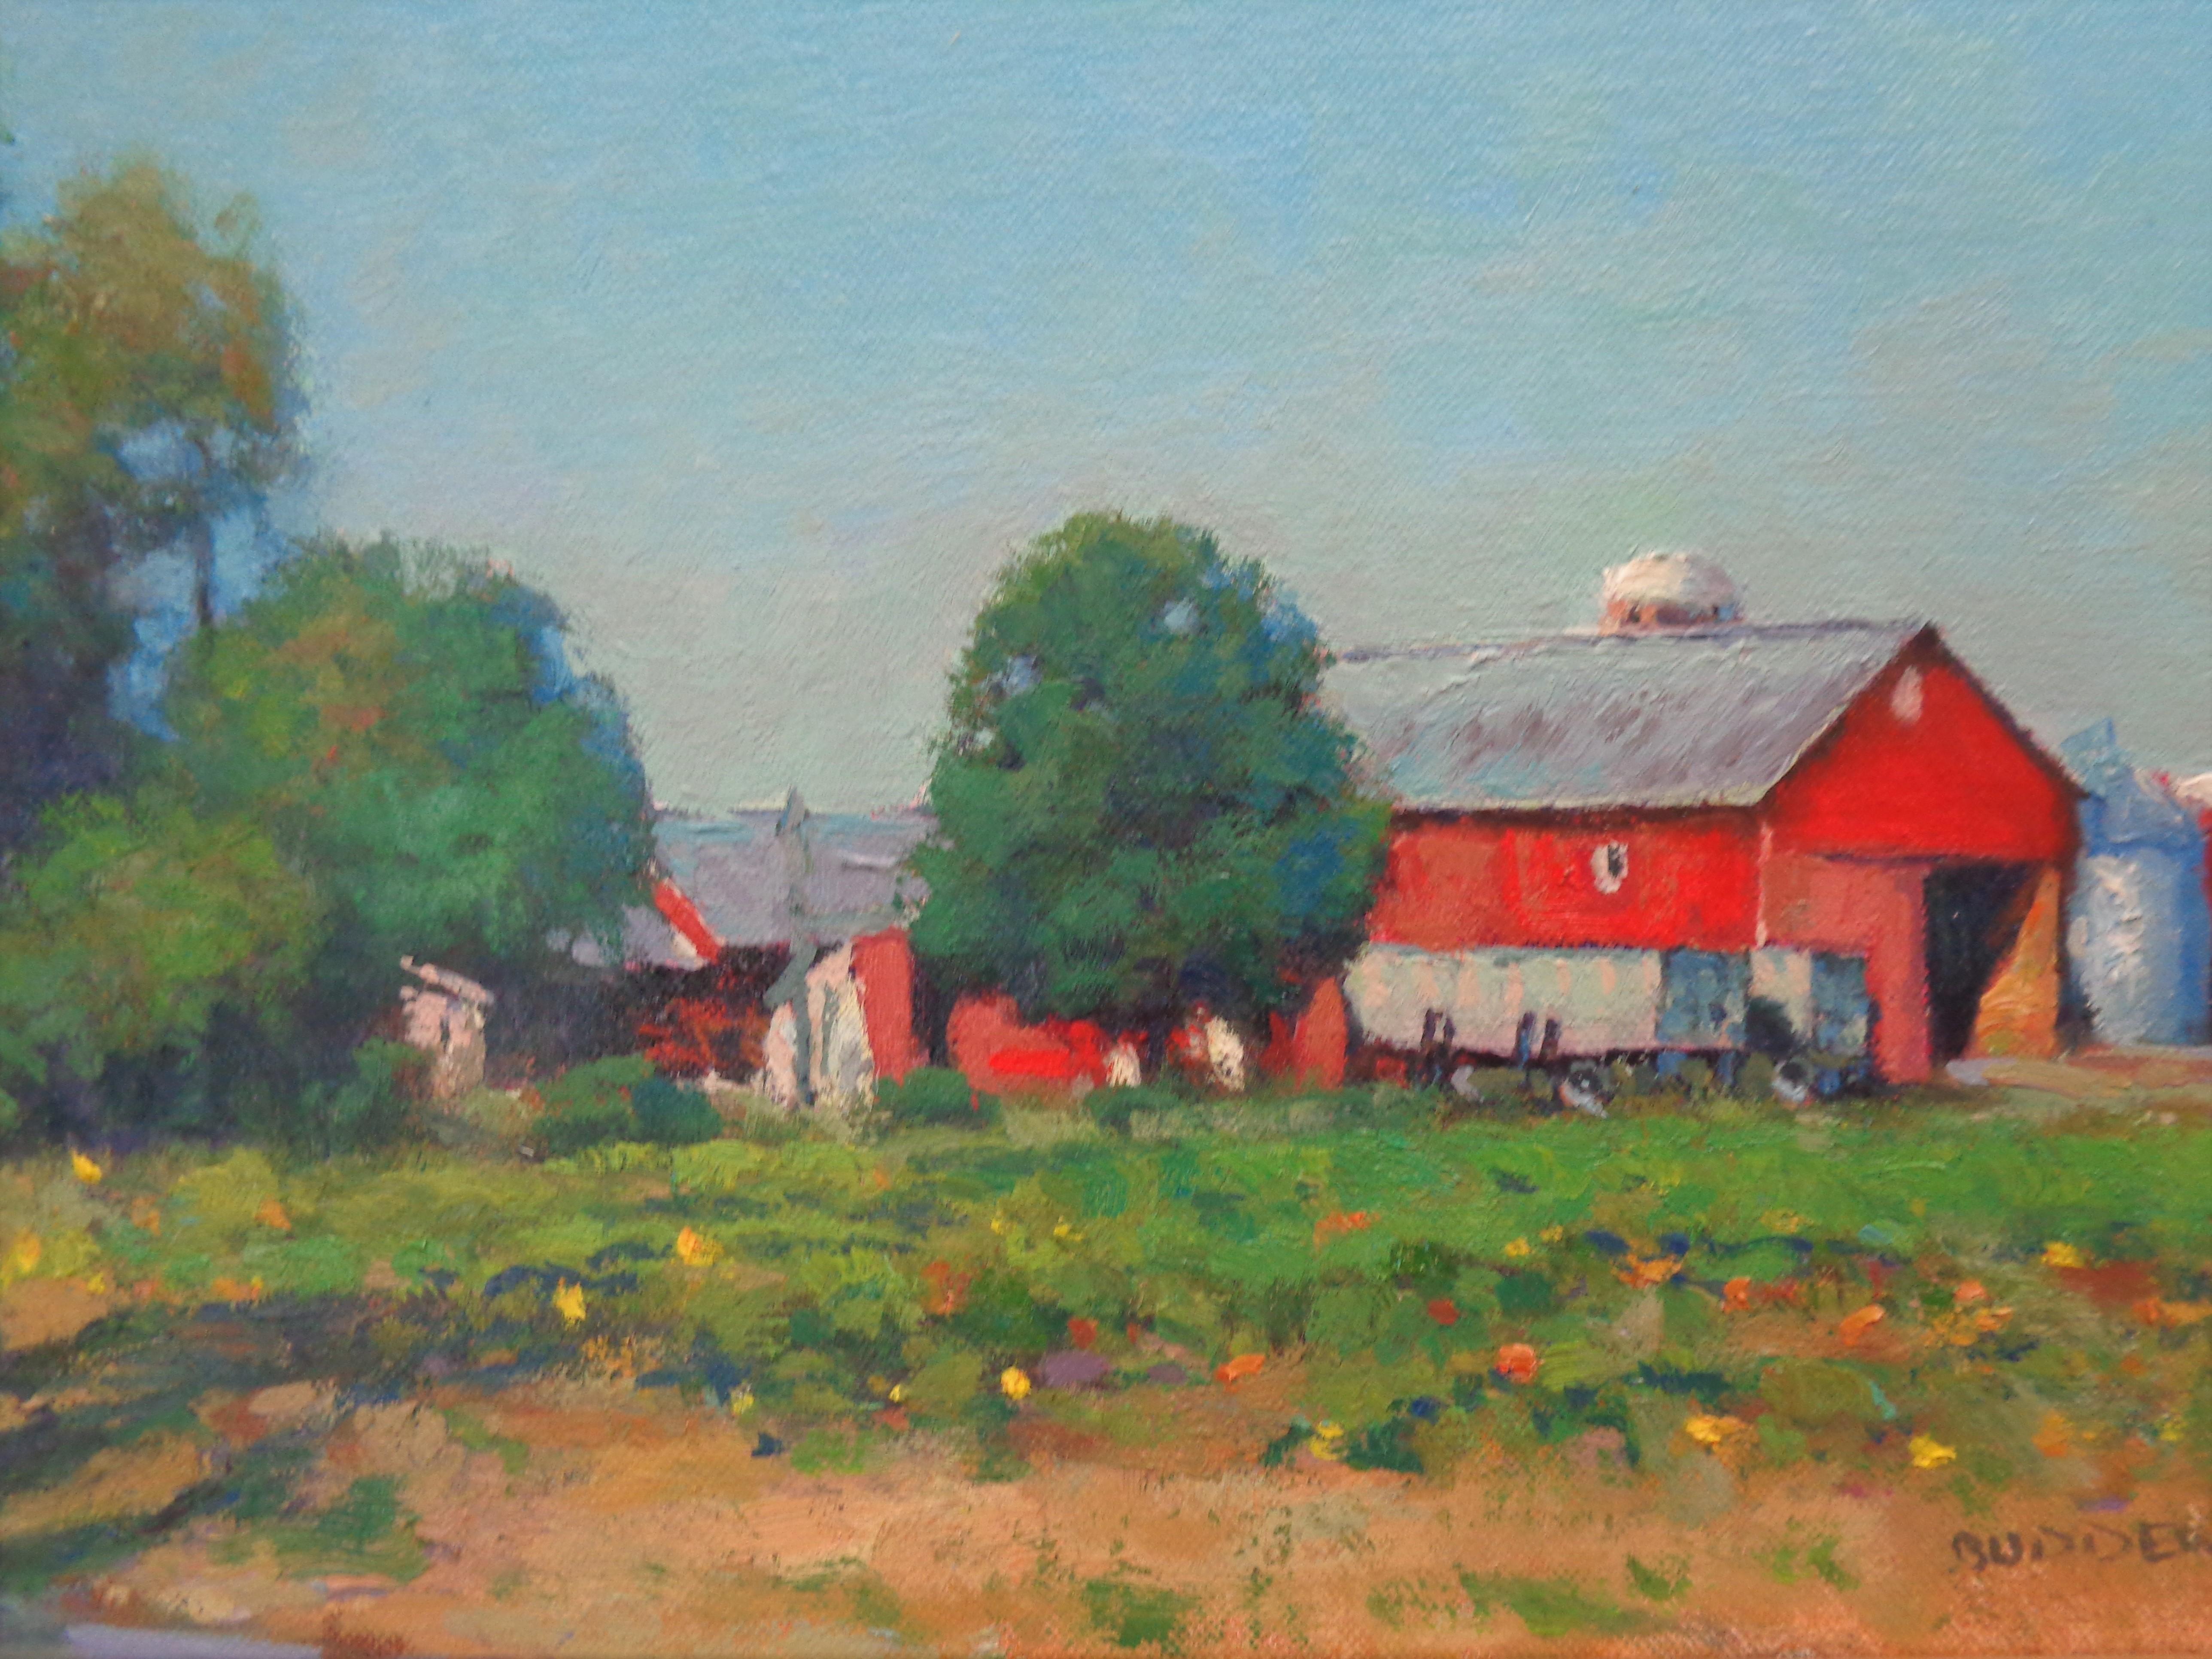  Impressionistic Rural Farm Landscape Painting Michael Budden Autumn Farm For Sale 5